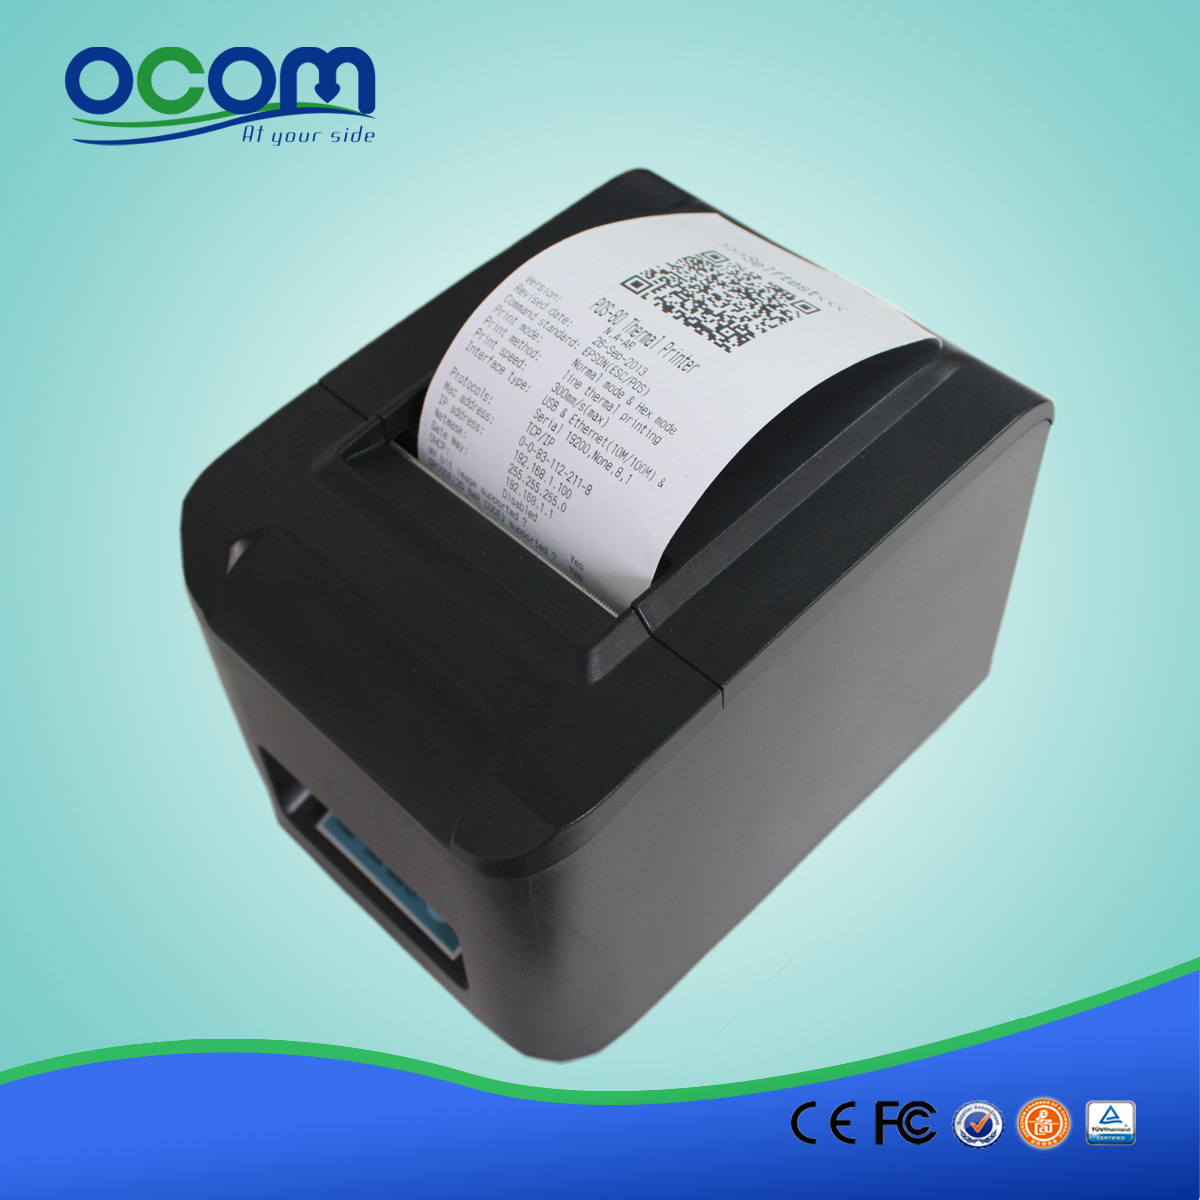 Ricezione WIFI POS 80 millimetri ad alta velocità della stampante-OCPP-808-W